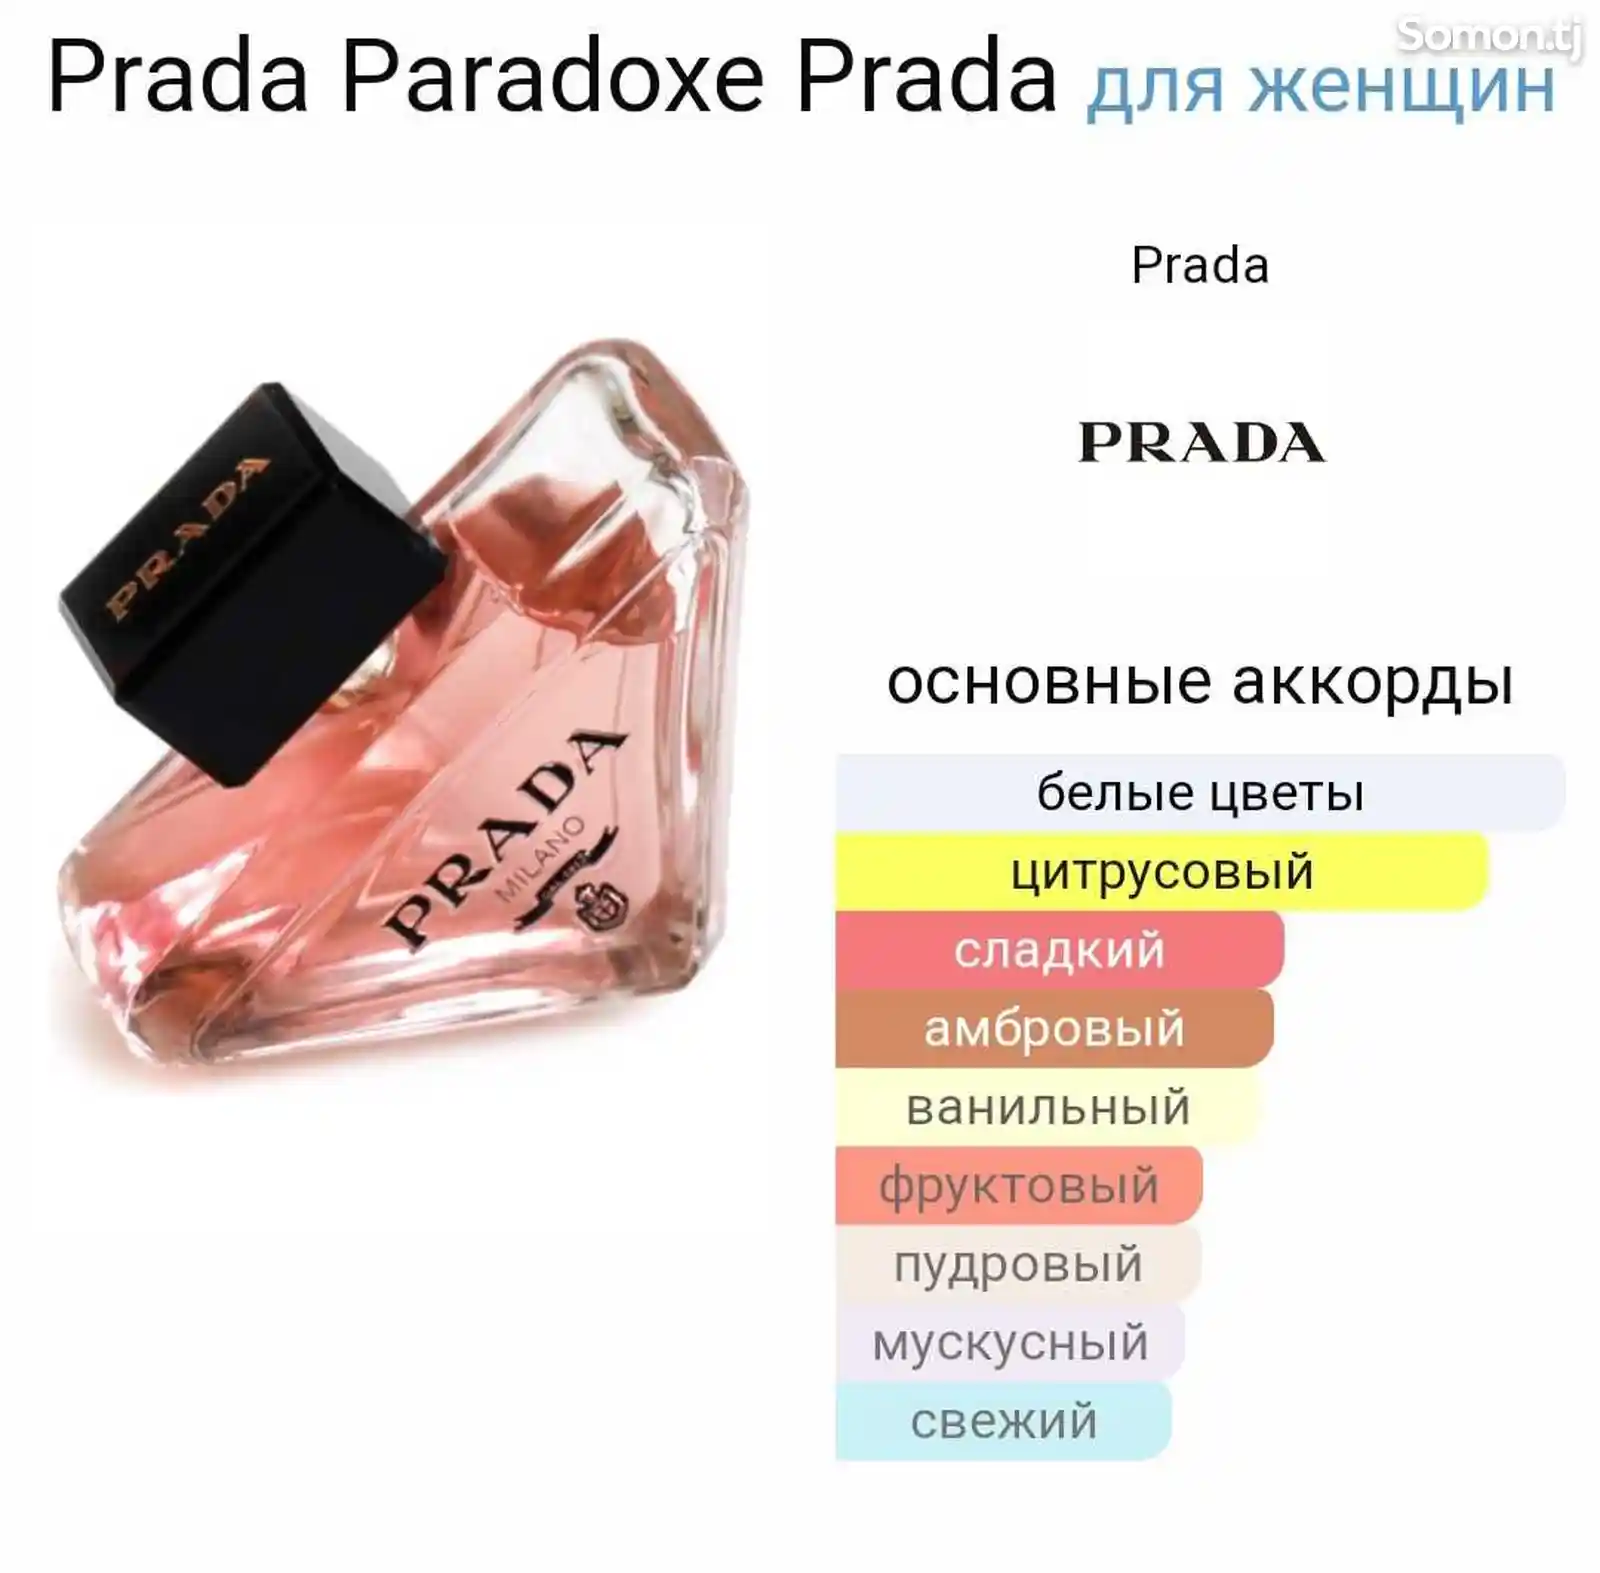 Парфюм Prada Paradoxe-2